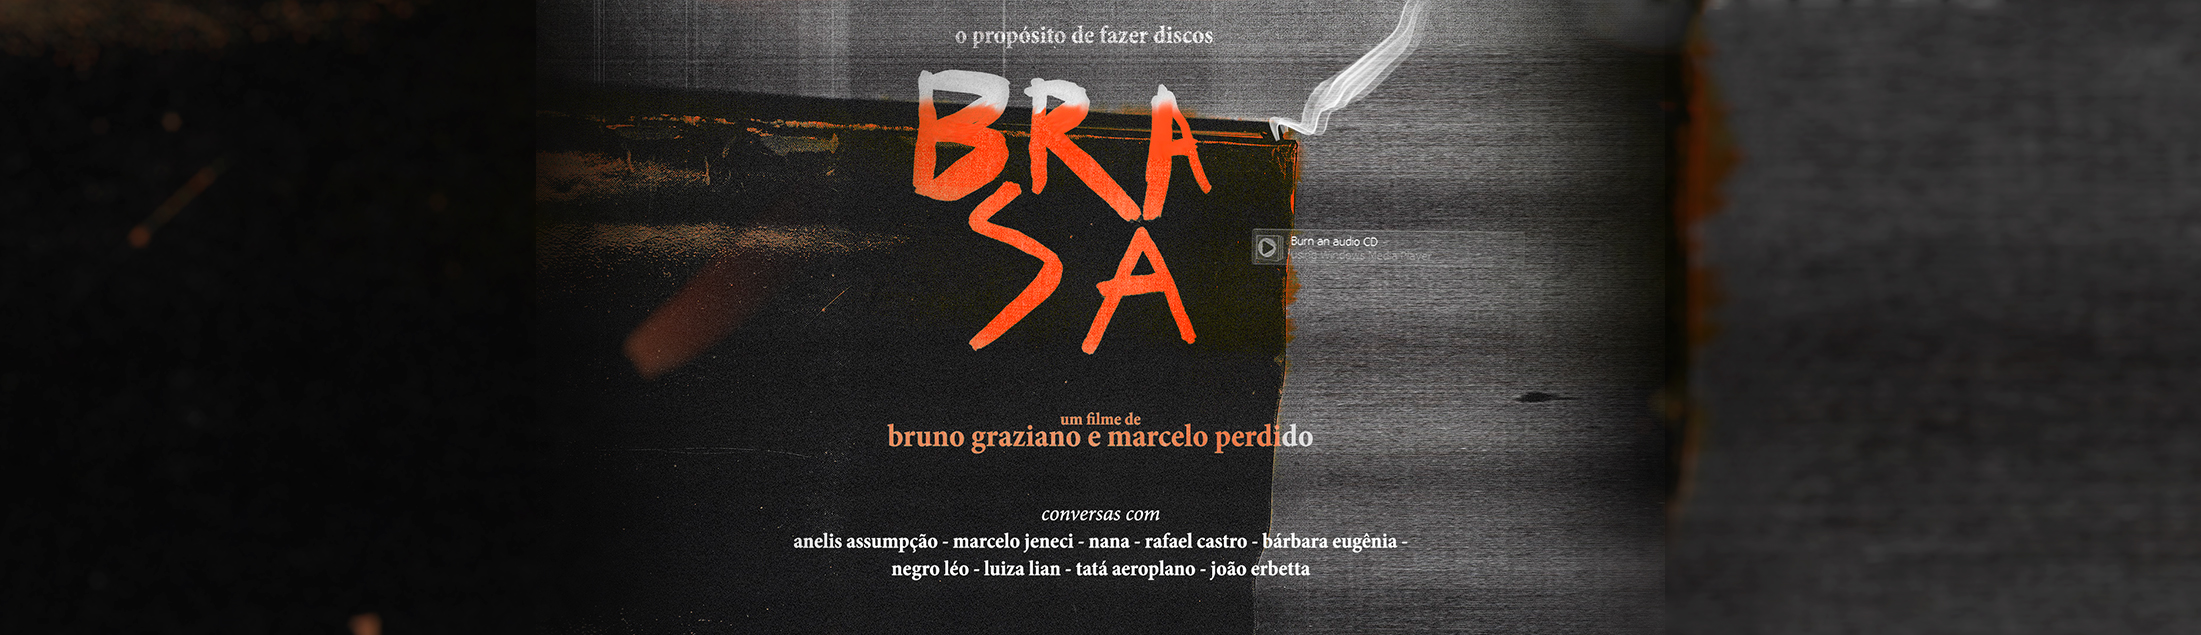 Filme 'Brasa' analisa a criação musical artística com diversas participações especiais